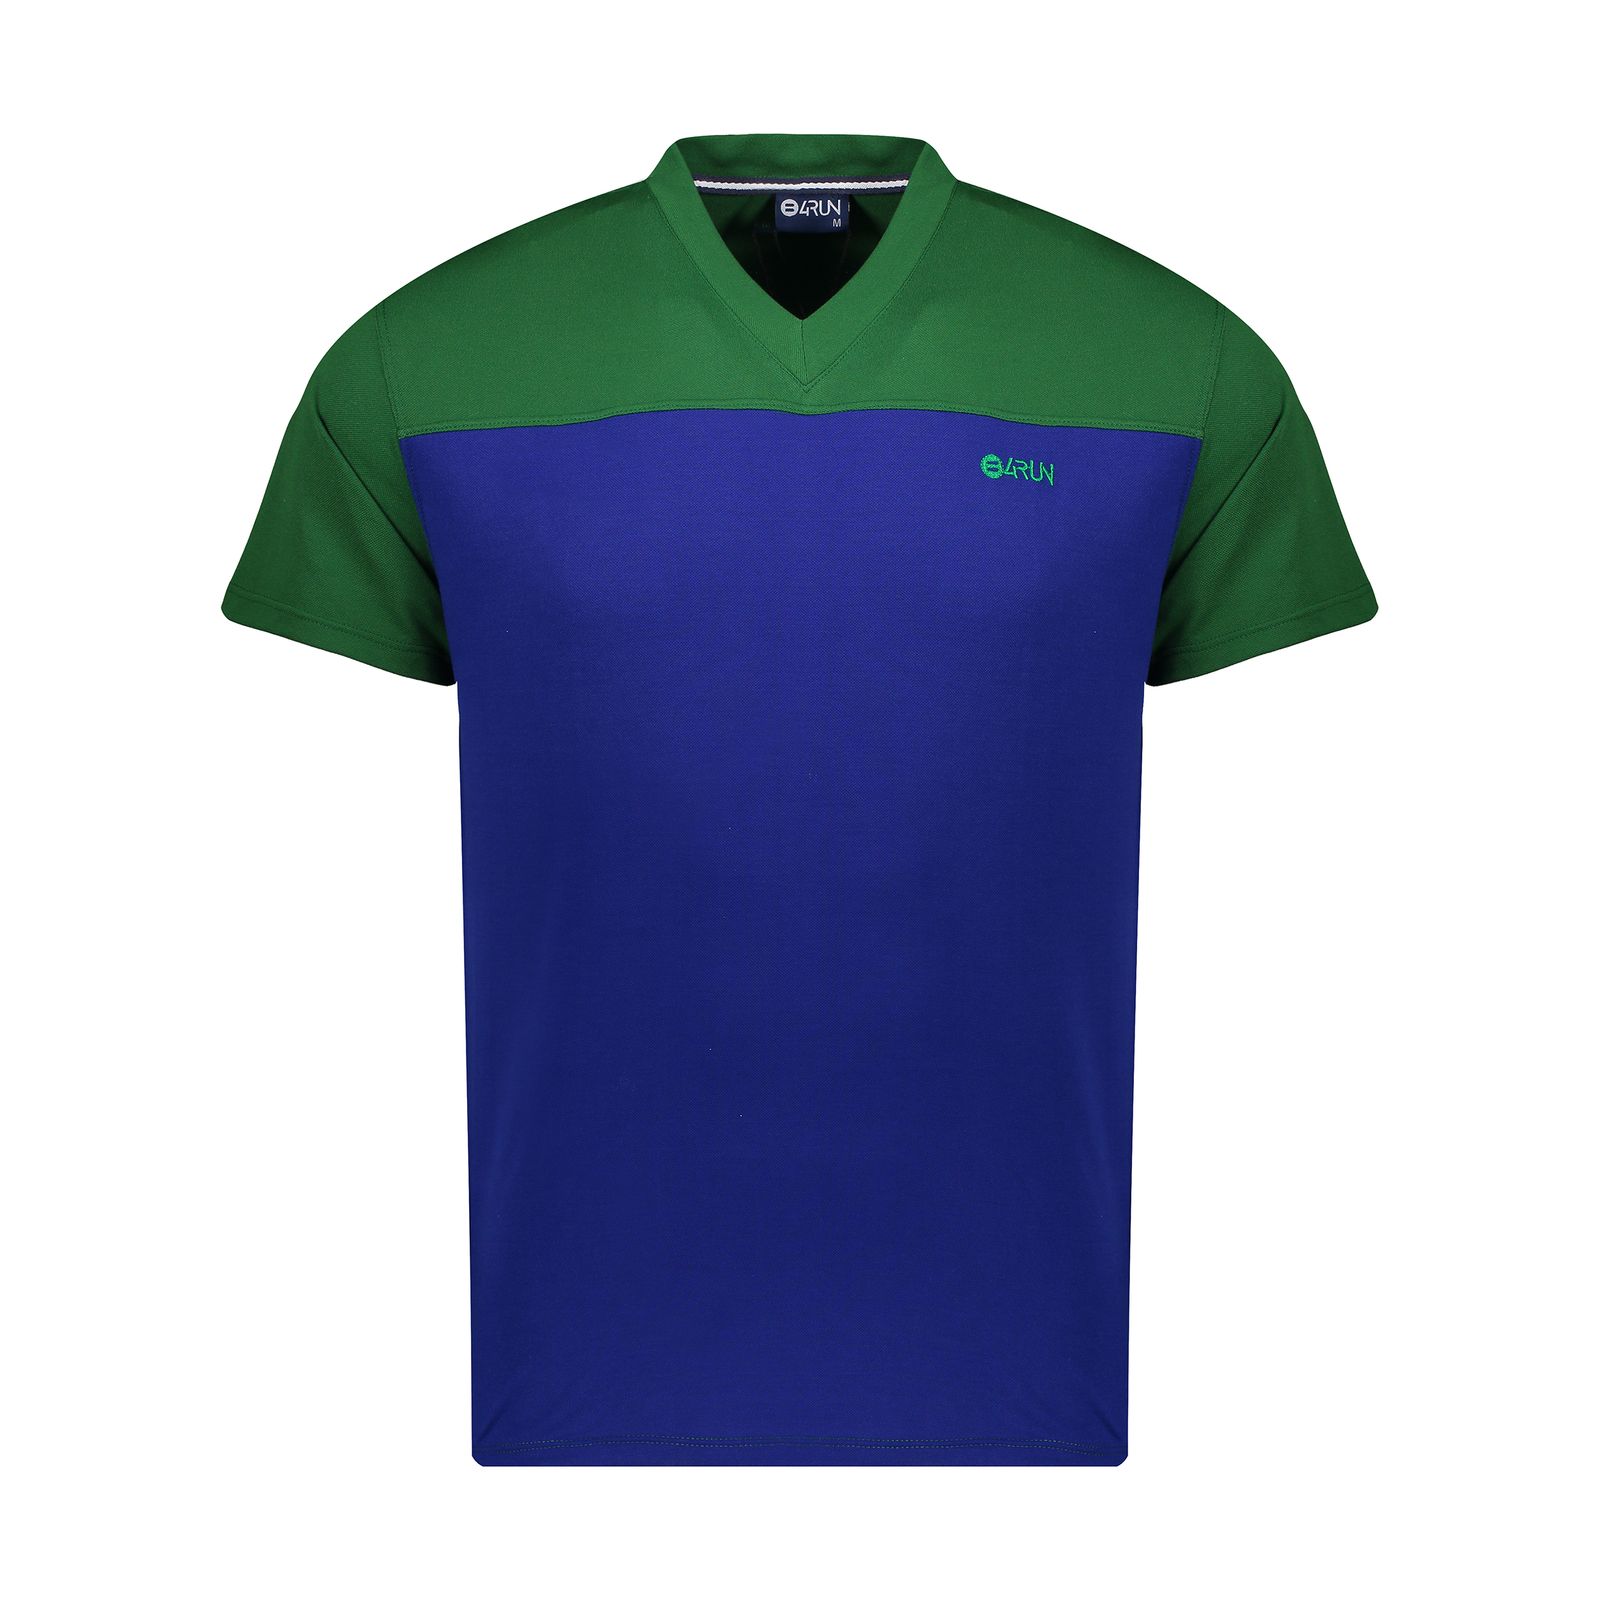 تی شرت ورزشی مردانه بی فور ران مدل 980317-4358 - سبز - آبی - 1